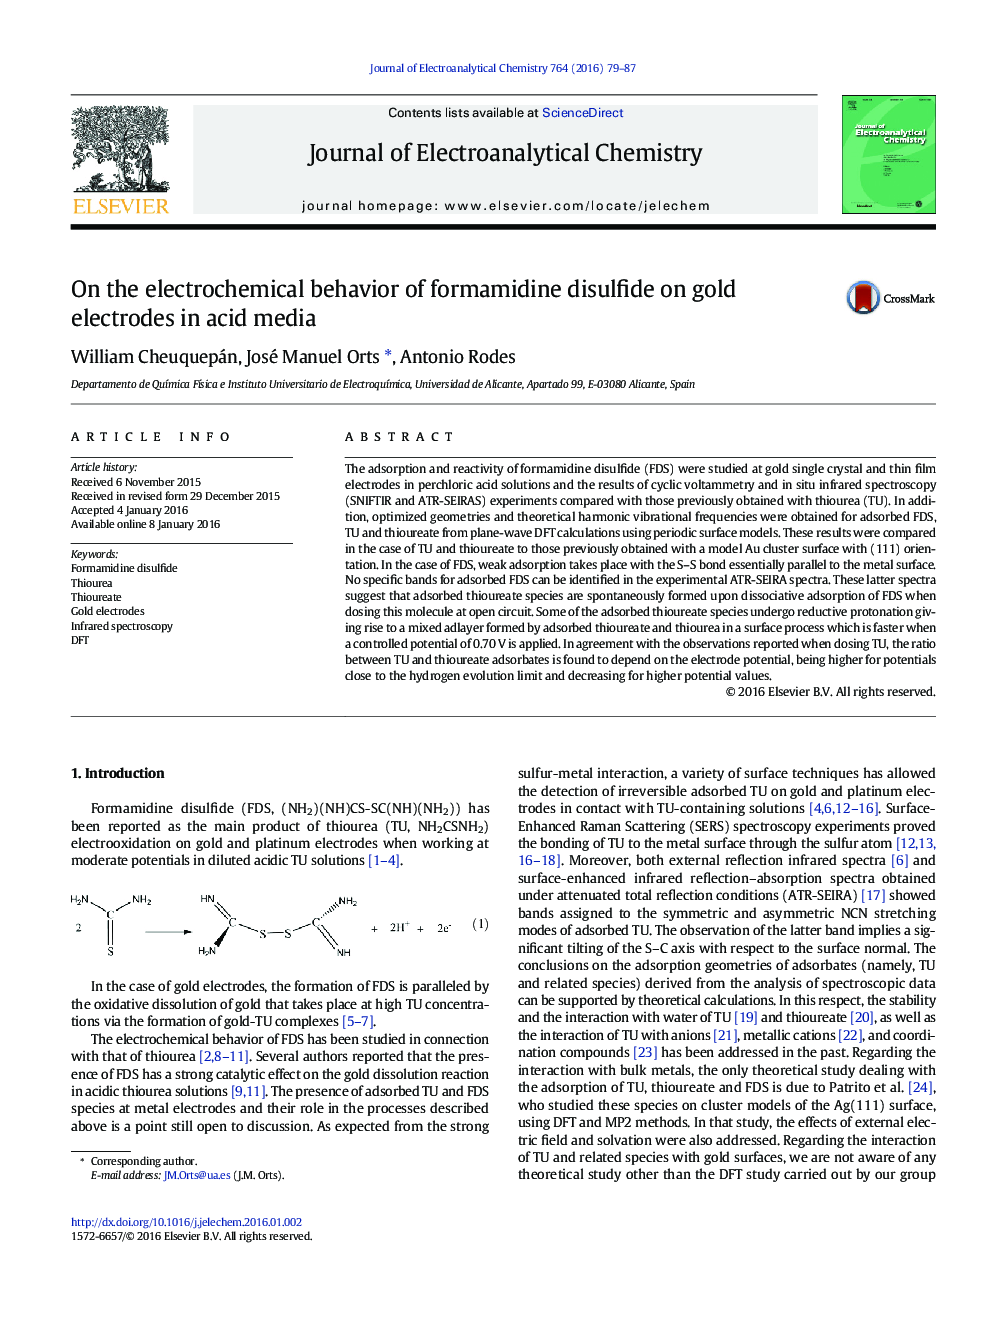 در رفتار الکتروشیمیایی فرمول آمیدین دی سولفید بر روی الکترودهای طلا در رسانه های اسیدی 